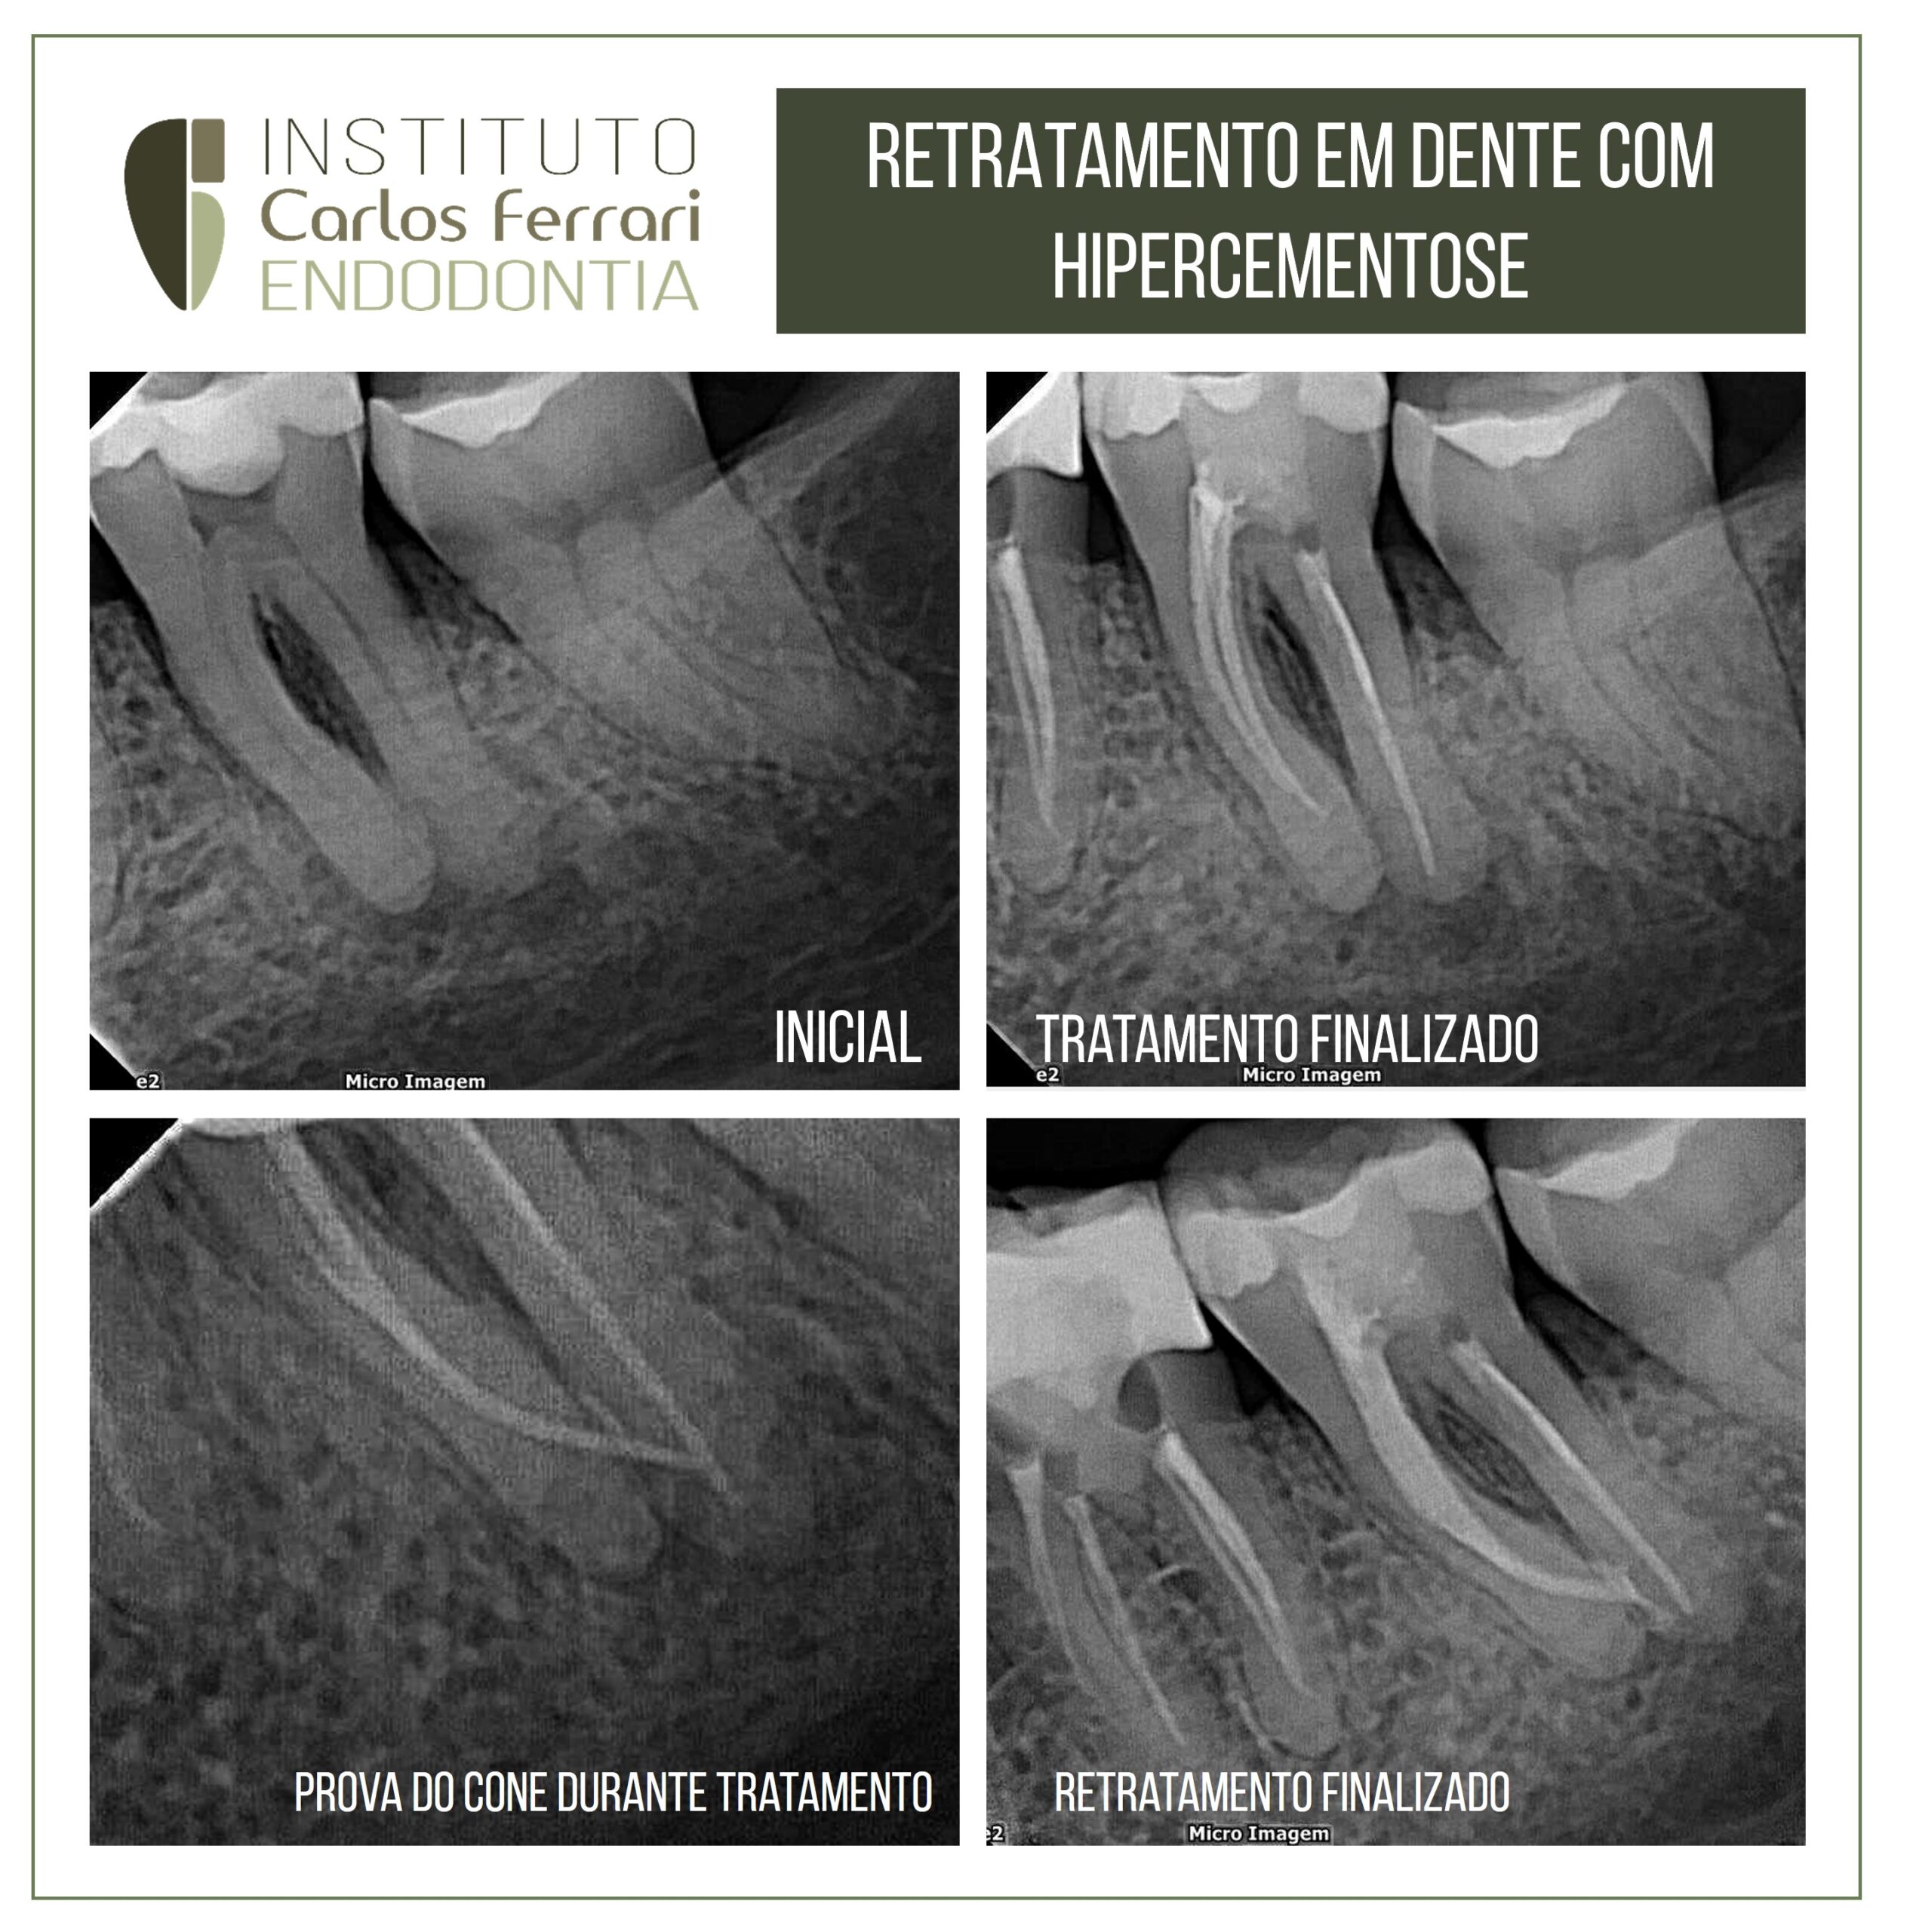 You are currently viewing Retratamento em dente com hipercementose.